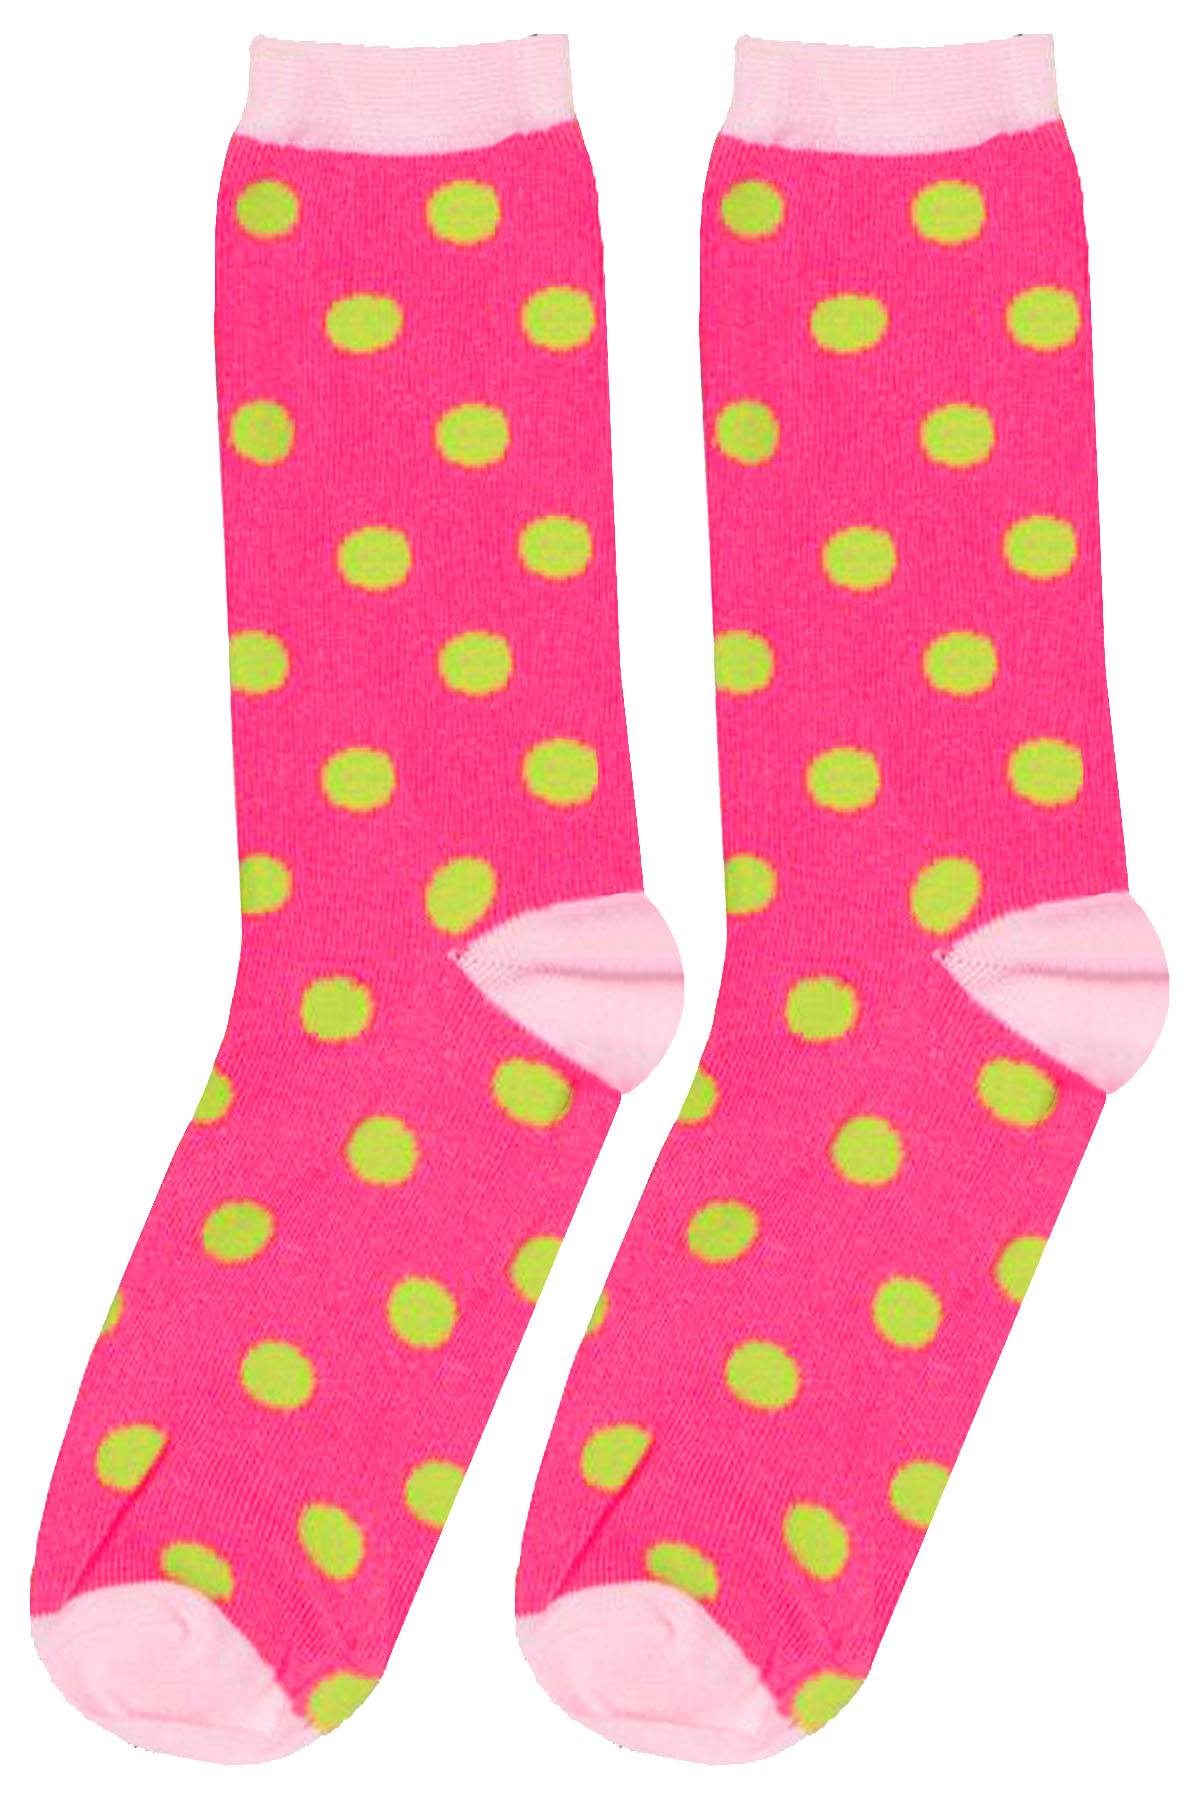 Mamia Pink/Lime Polka Dot Crew Socks